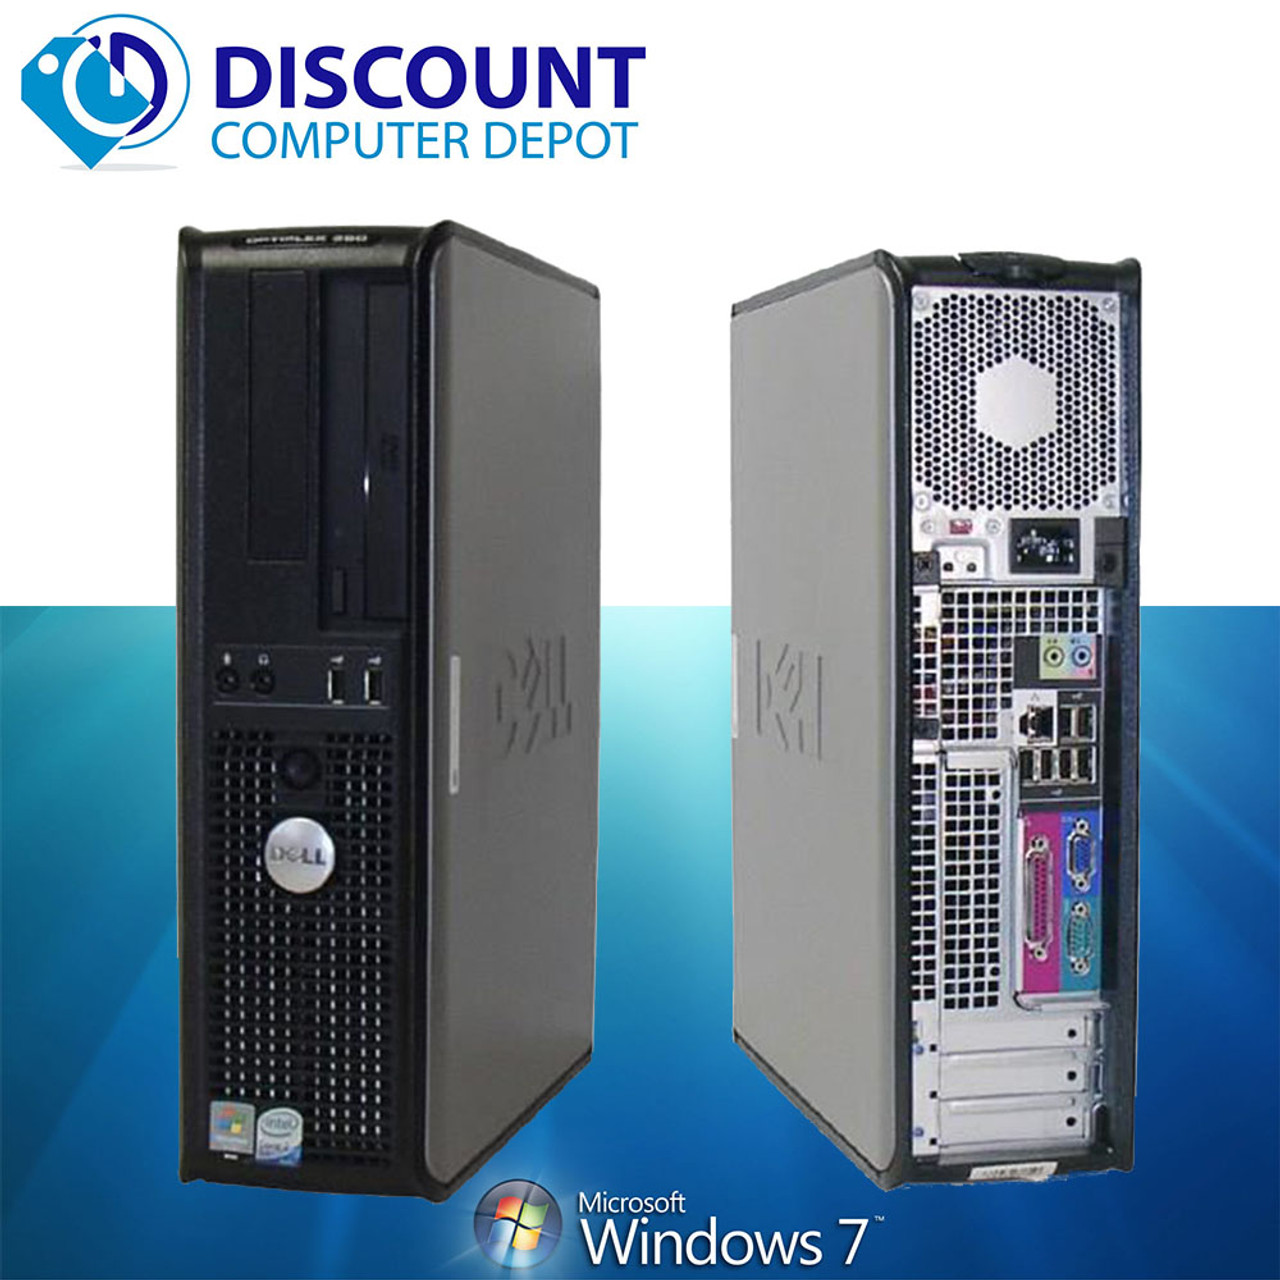 Windows 7 Premium 32-bit Dell Optiplex 745  GHz, Core 2 Duo Small Desktop  & LCD Computer Monitor